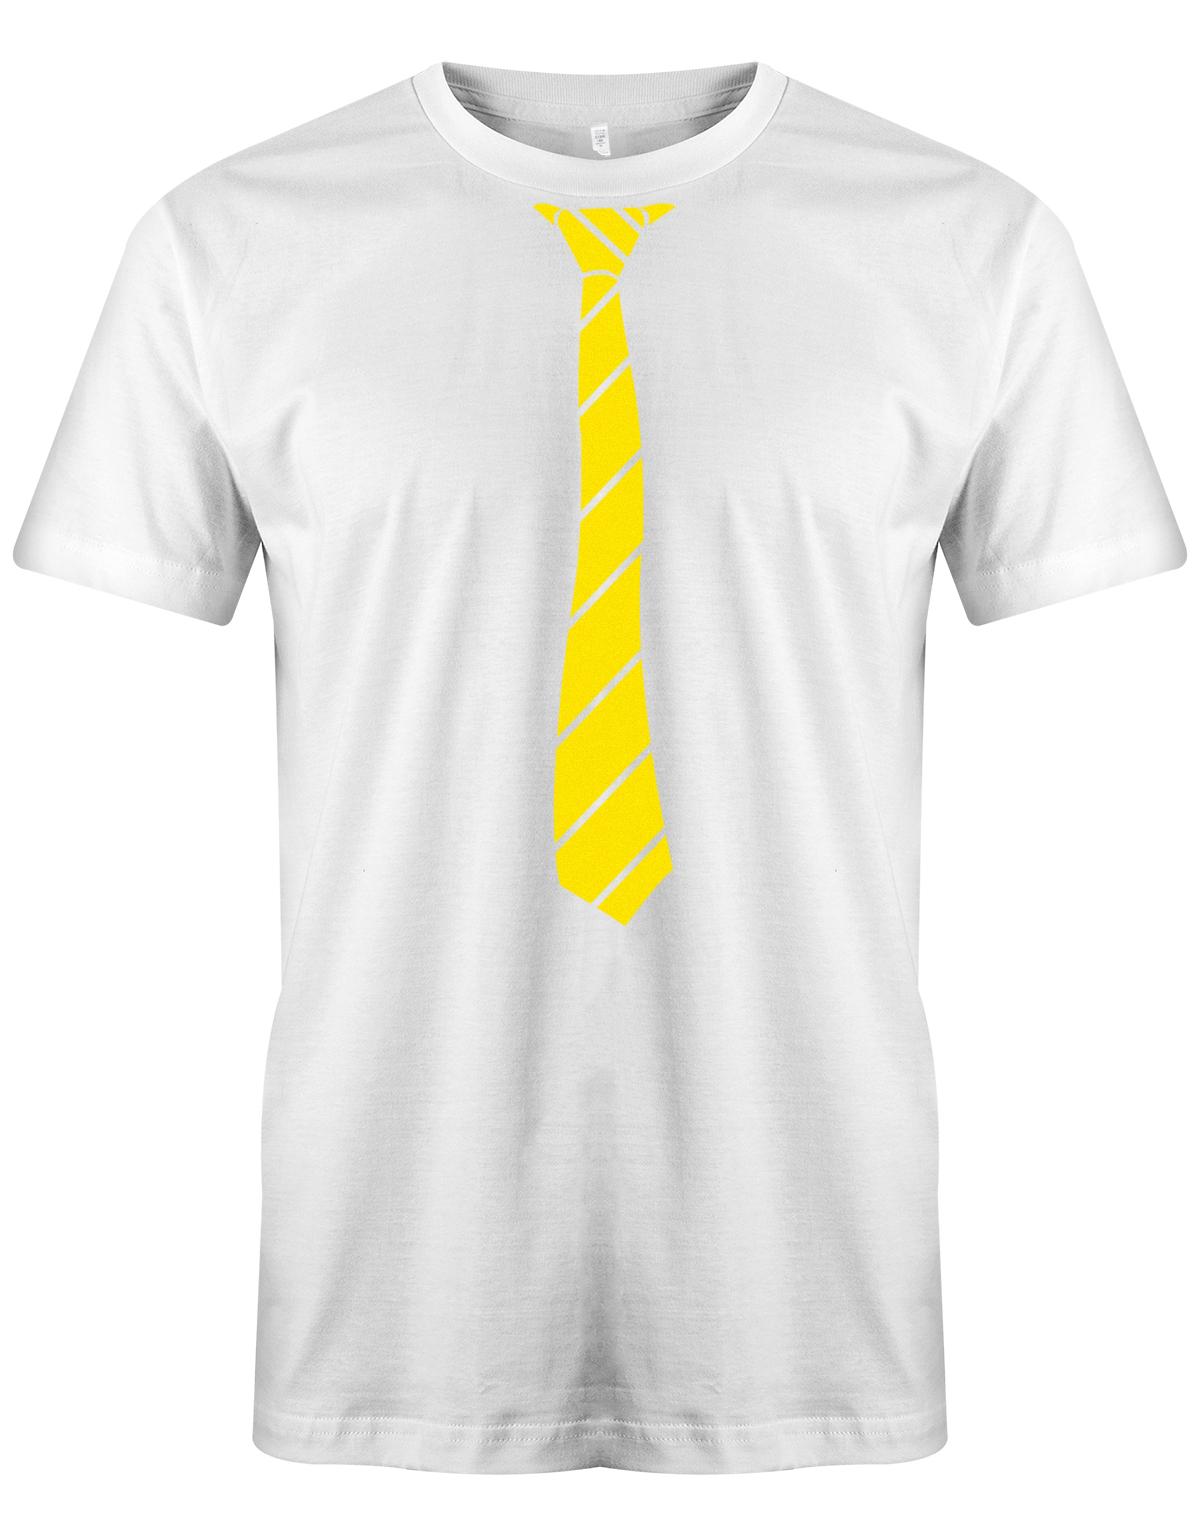 Krawatte-buisness-Herren-Shirt-JGA-Weiss-Gelb